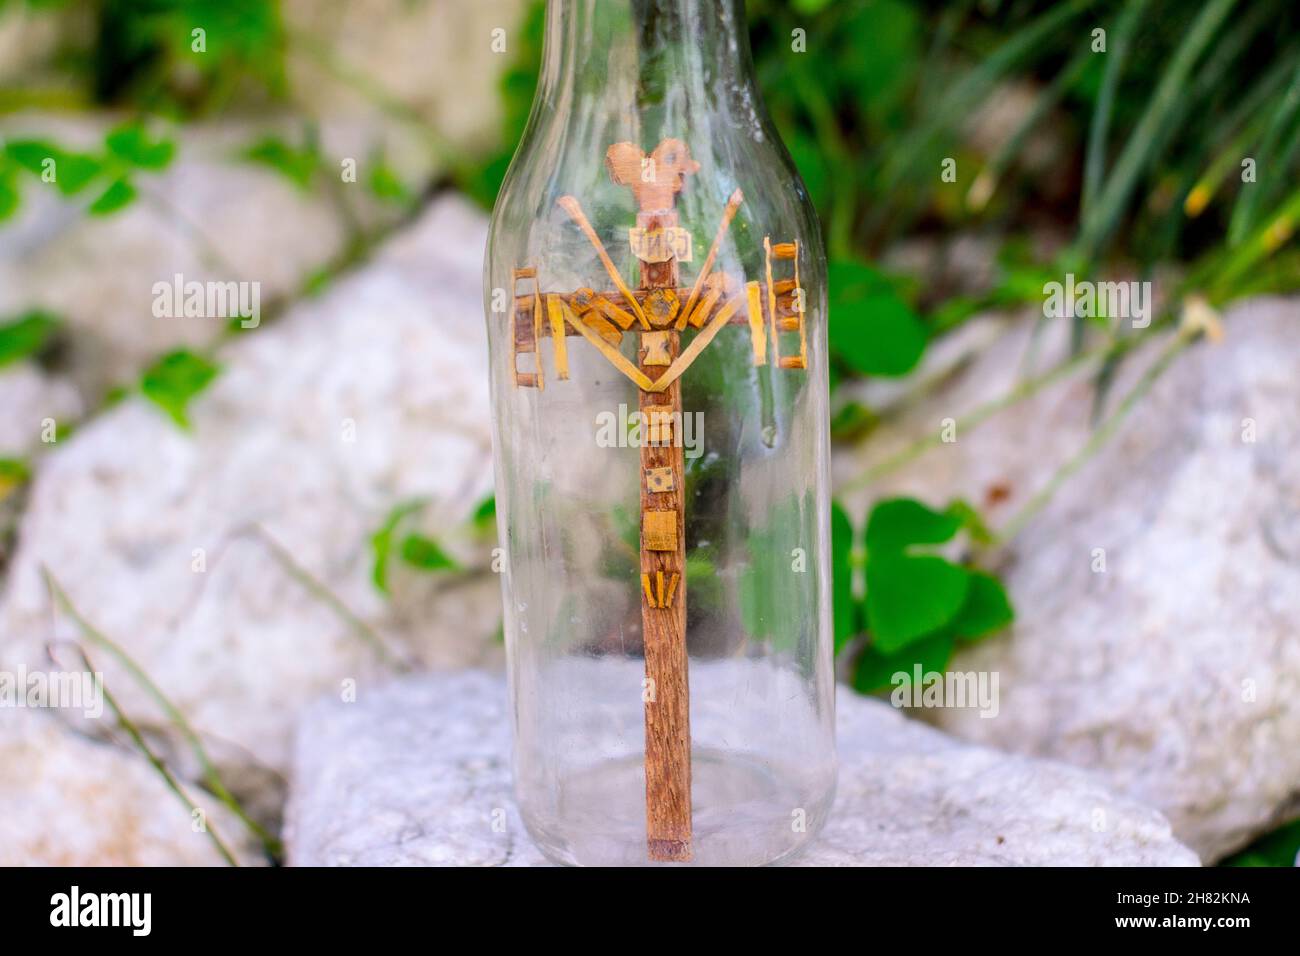 Kreuzfahrt in einer Flasche, in einem Garten in Rio de Janeiro, Brasilien - 23. Juni 2018: Religiöse Kreuzfahrt, in einer Flasche. Stockfoto